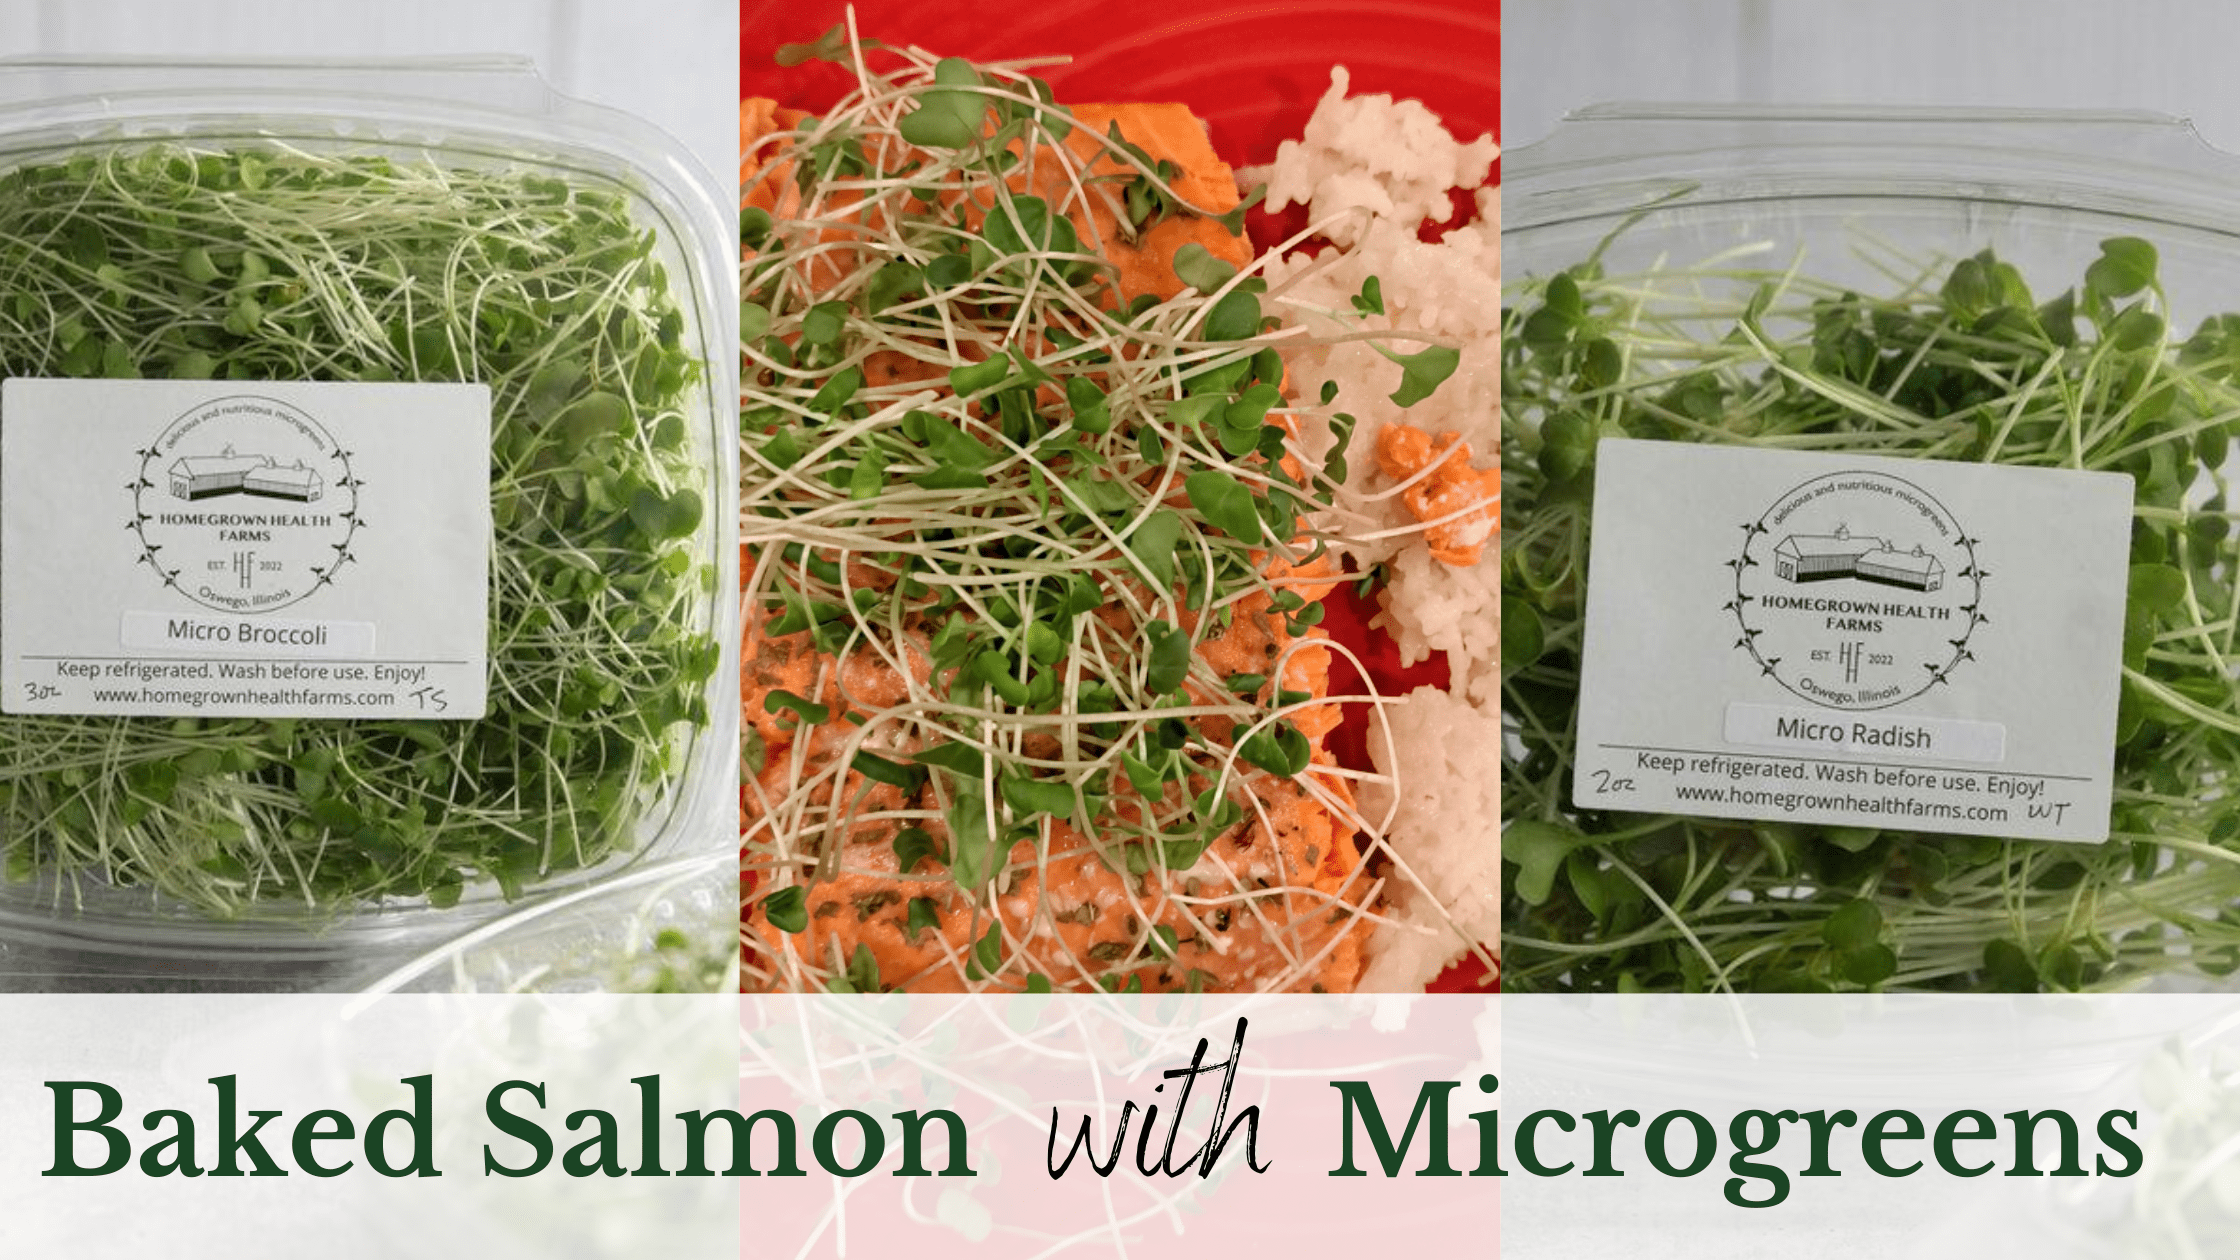 baked salmon with microgreens recipe. organic micro broccoli and micro radish